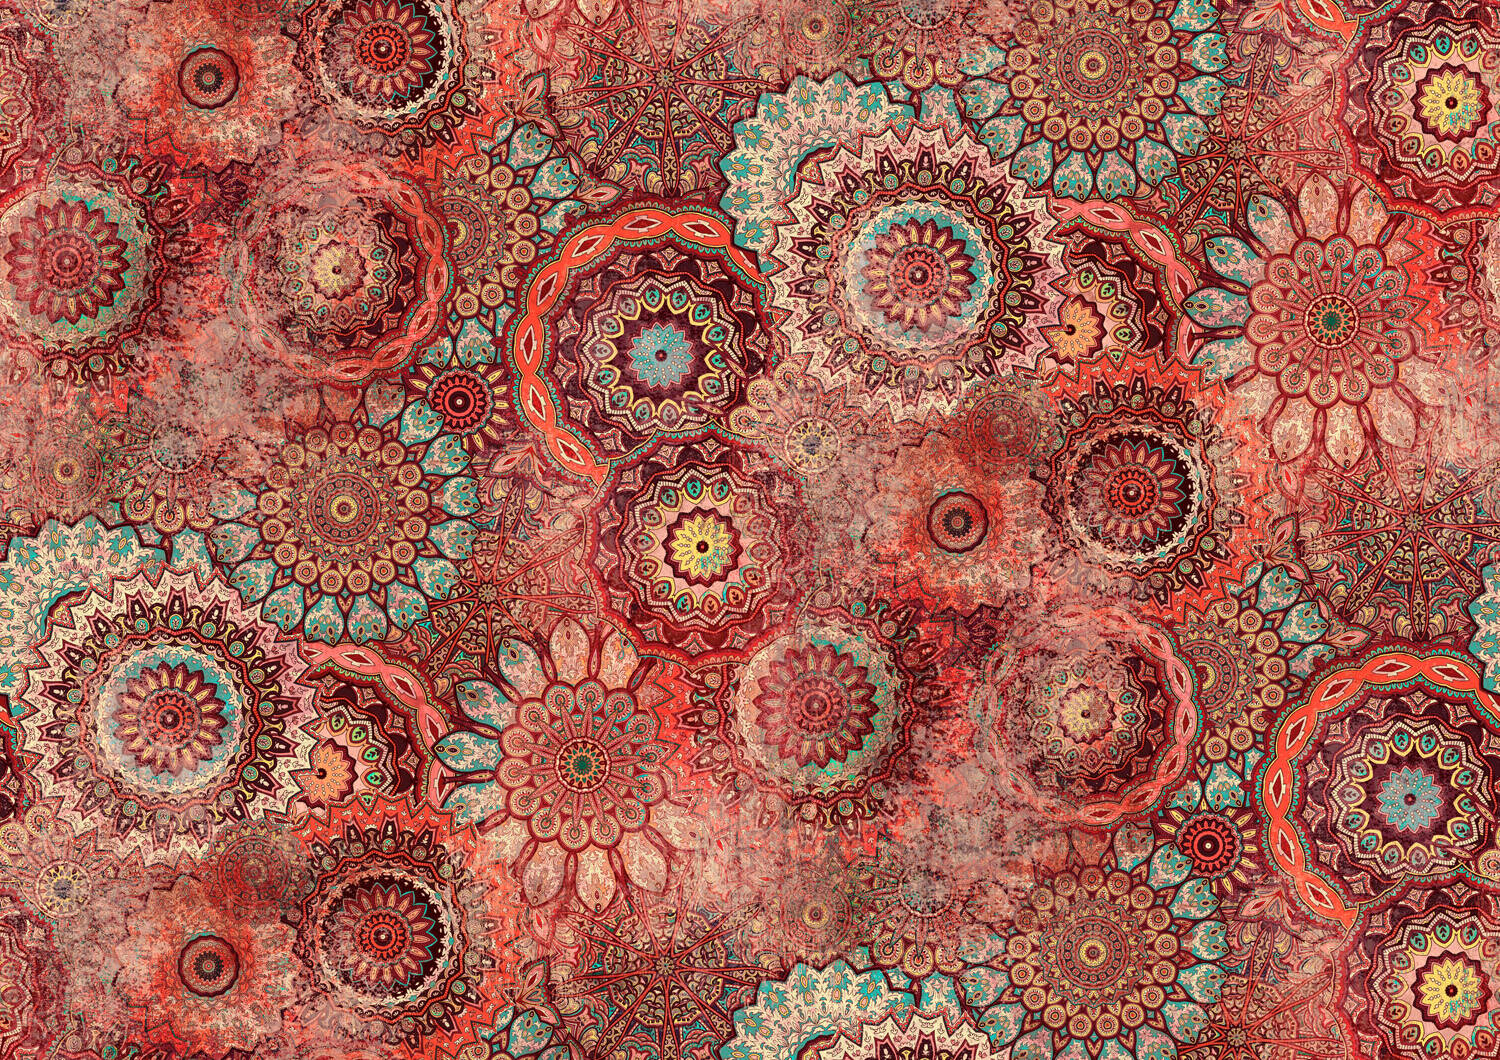 Wandbild - Prallvolle Mandala-Sammlung in Korallrot, Hellblau und Bordeaux mit wash-out-Effekten